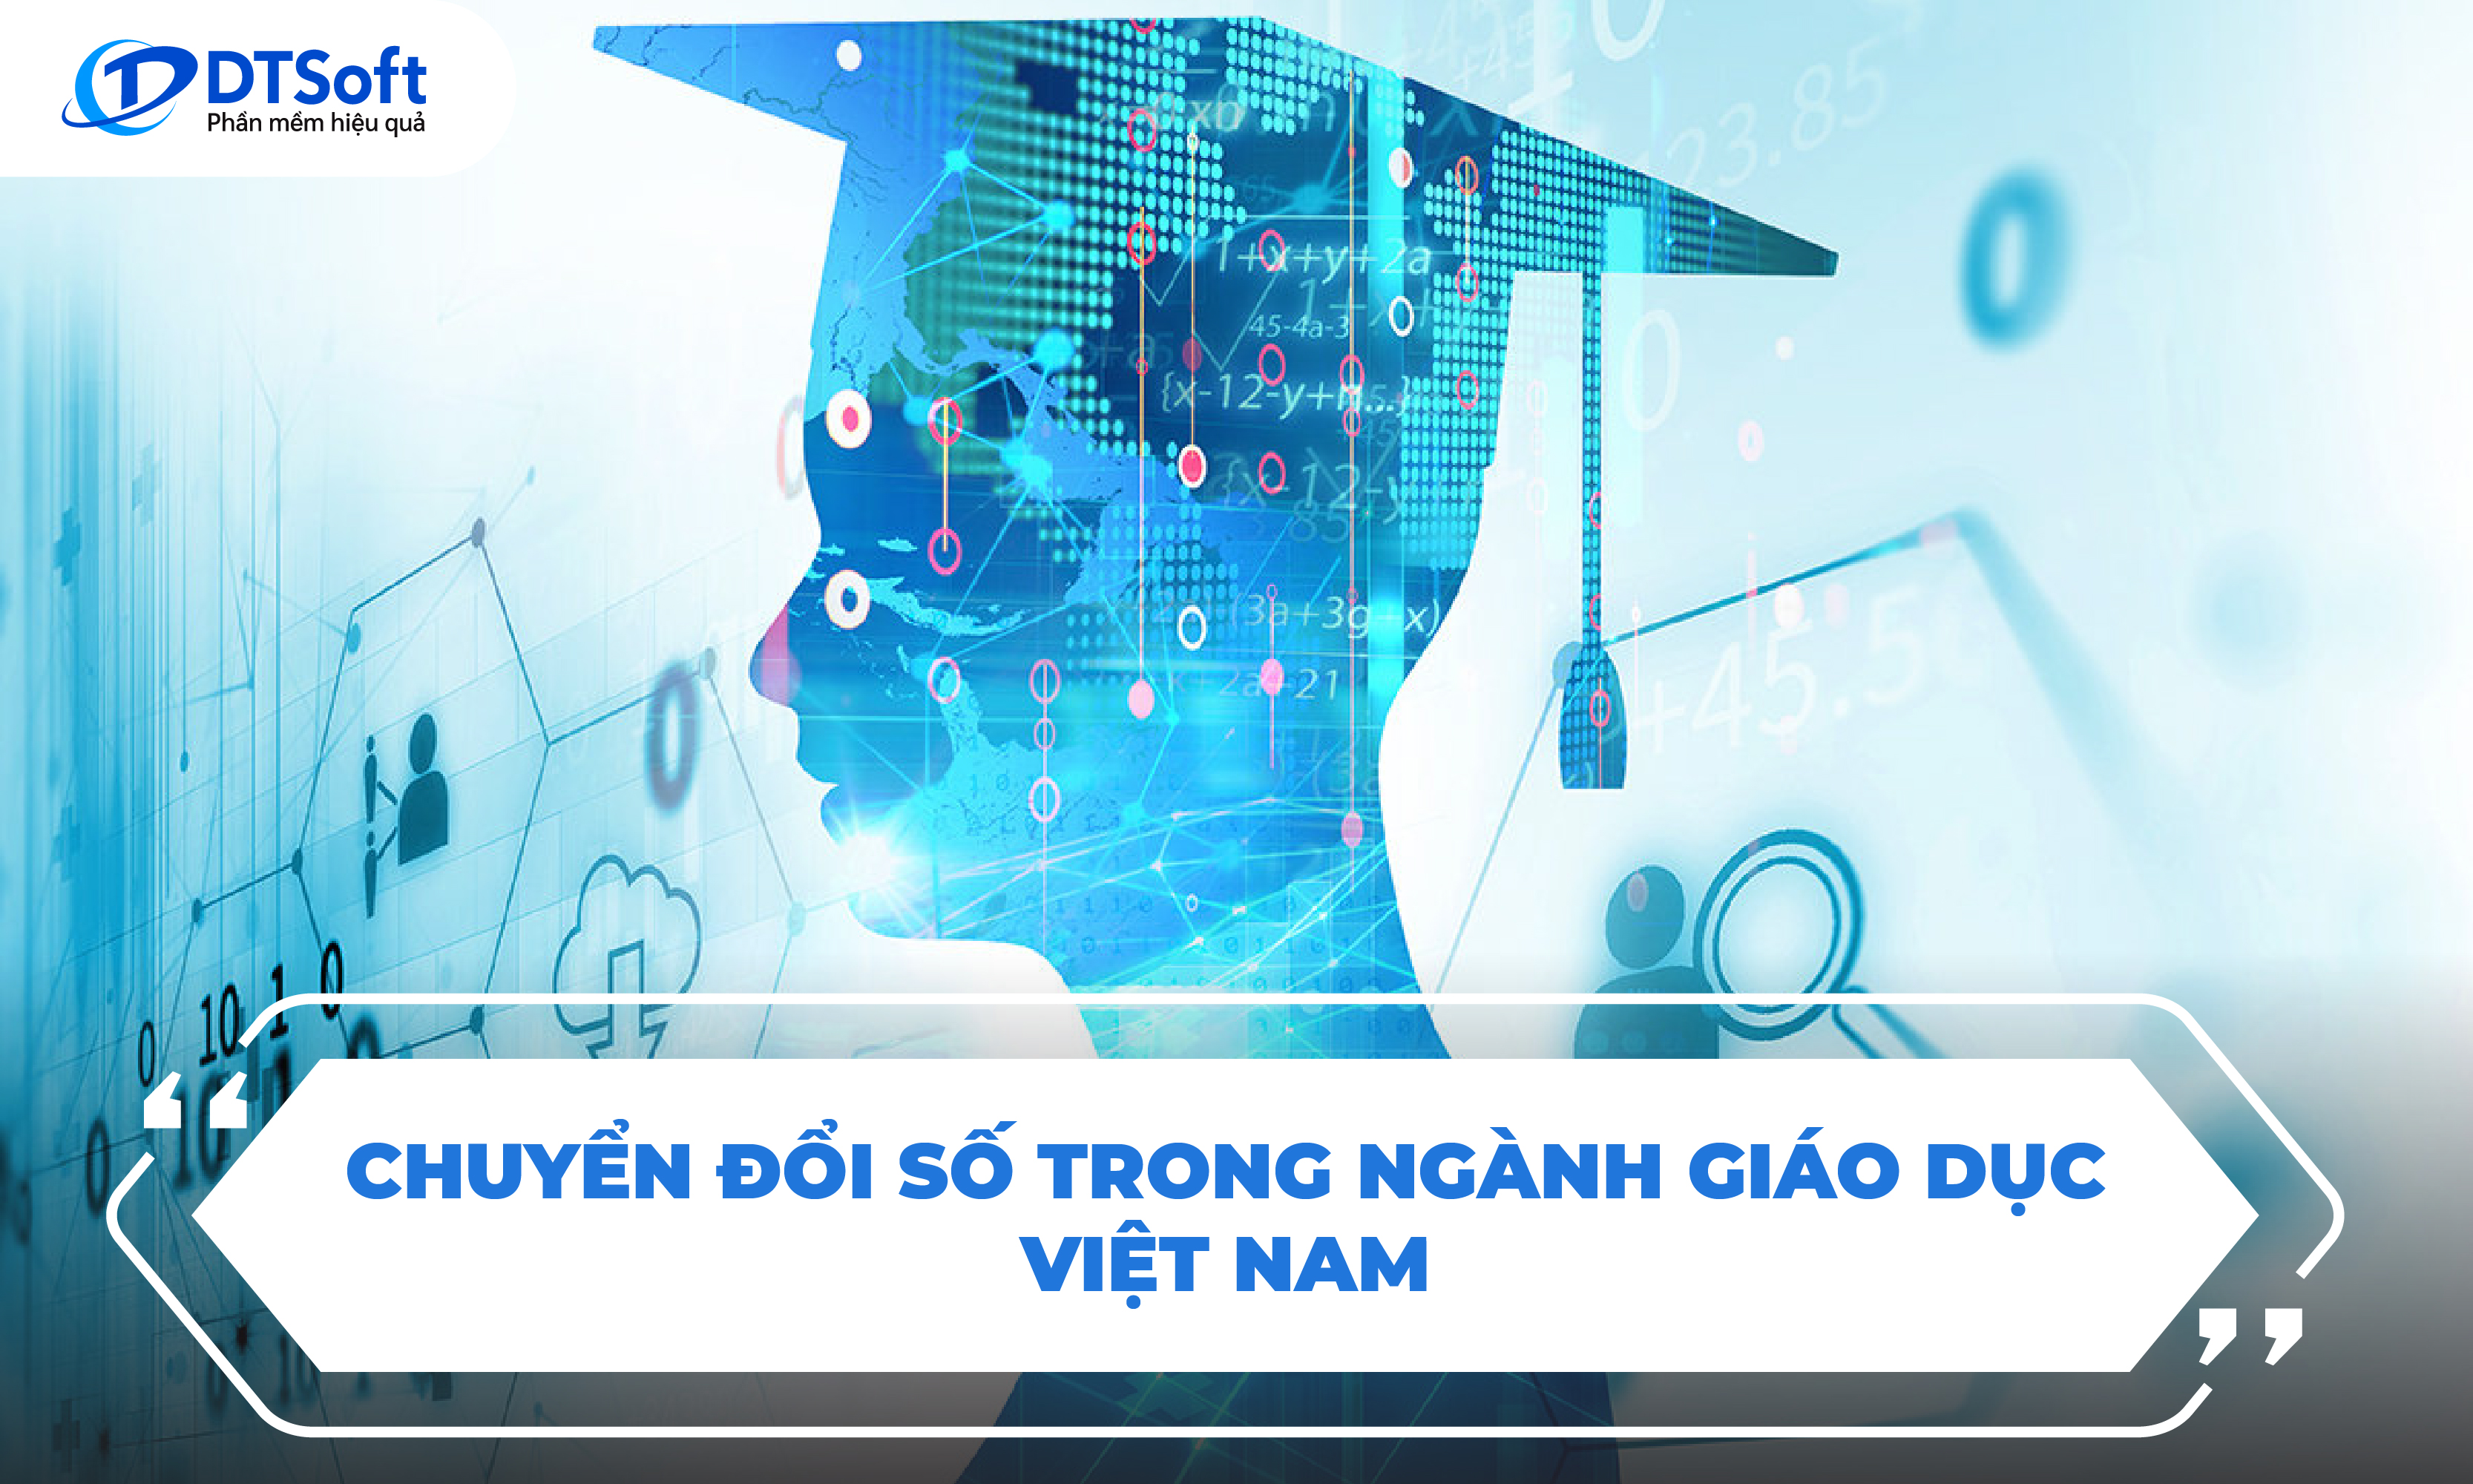 Chuyển đổi số trong ngành giáo dục tại Việt Nam